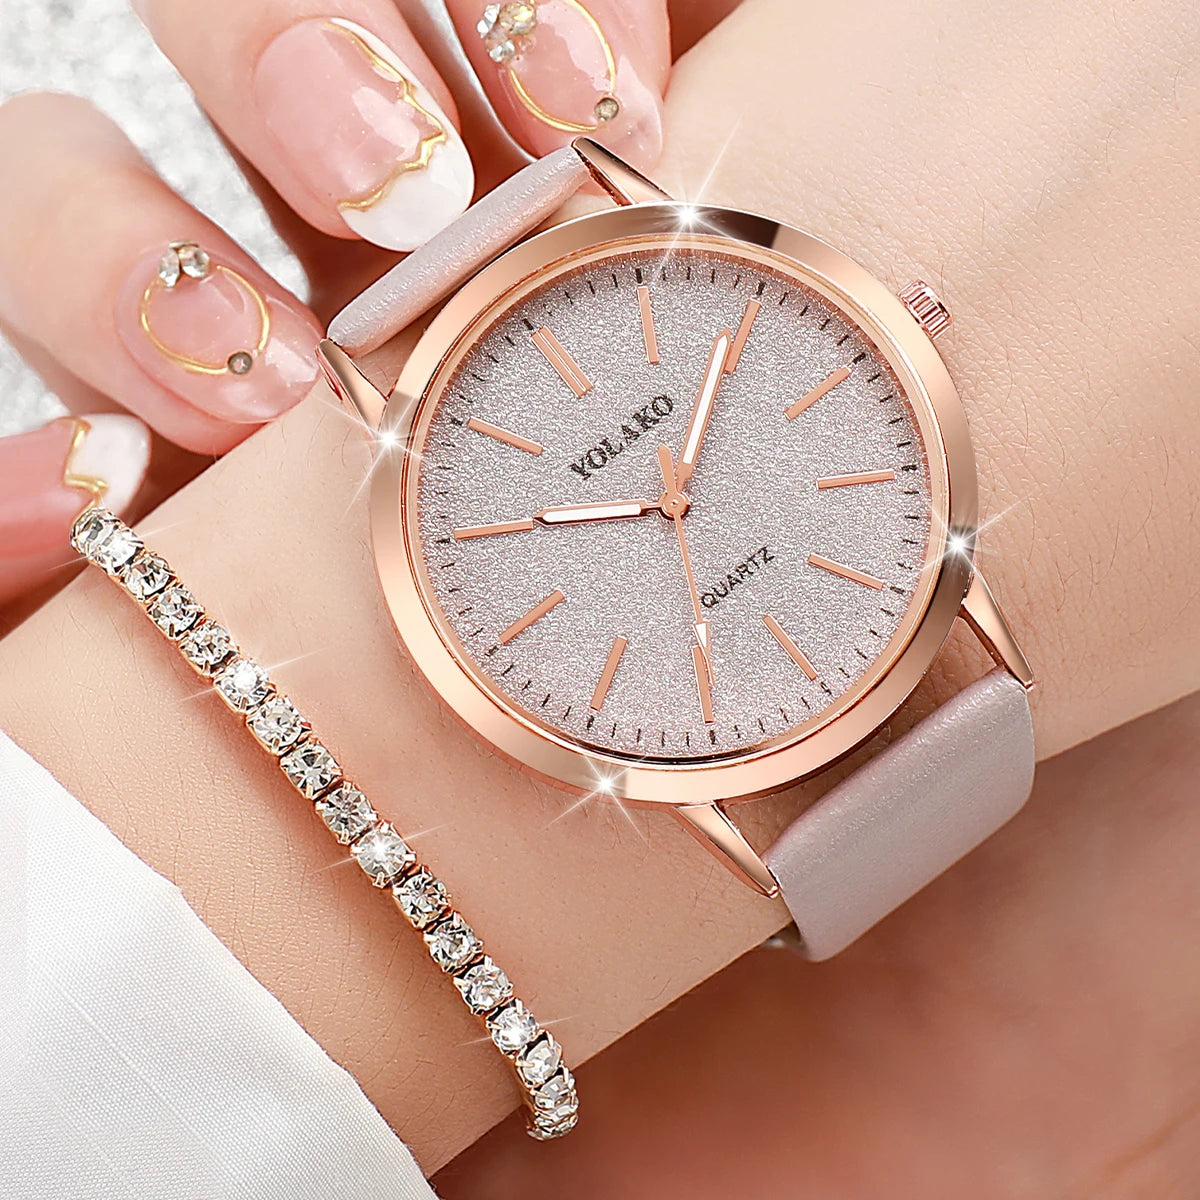 5PCS Women's Starry Sky Watch with Diamond Jewelry Set